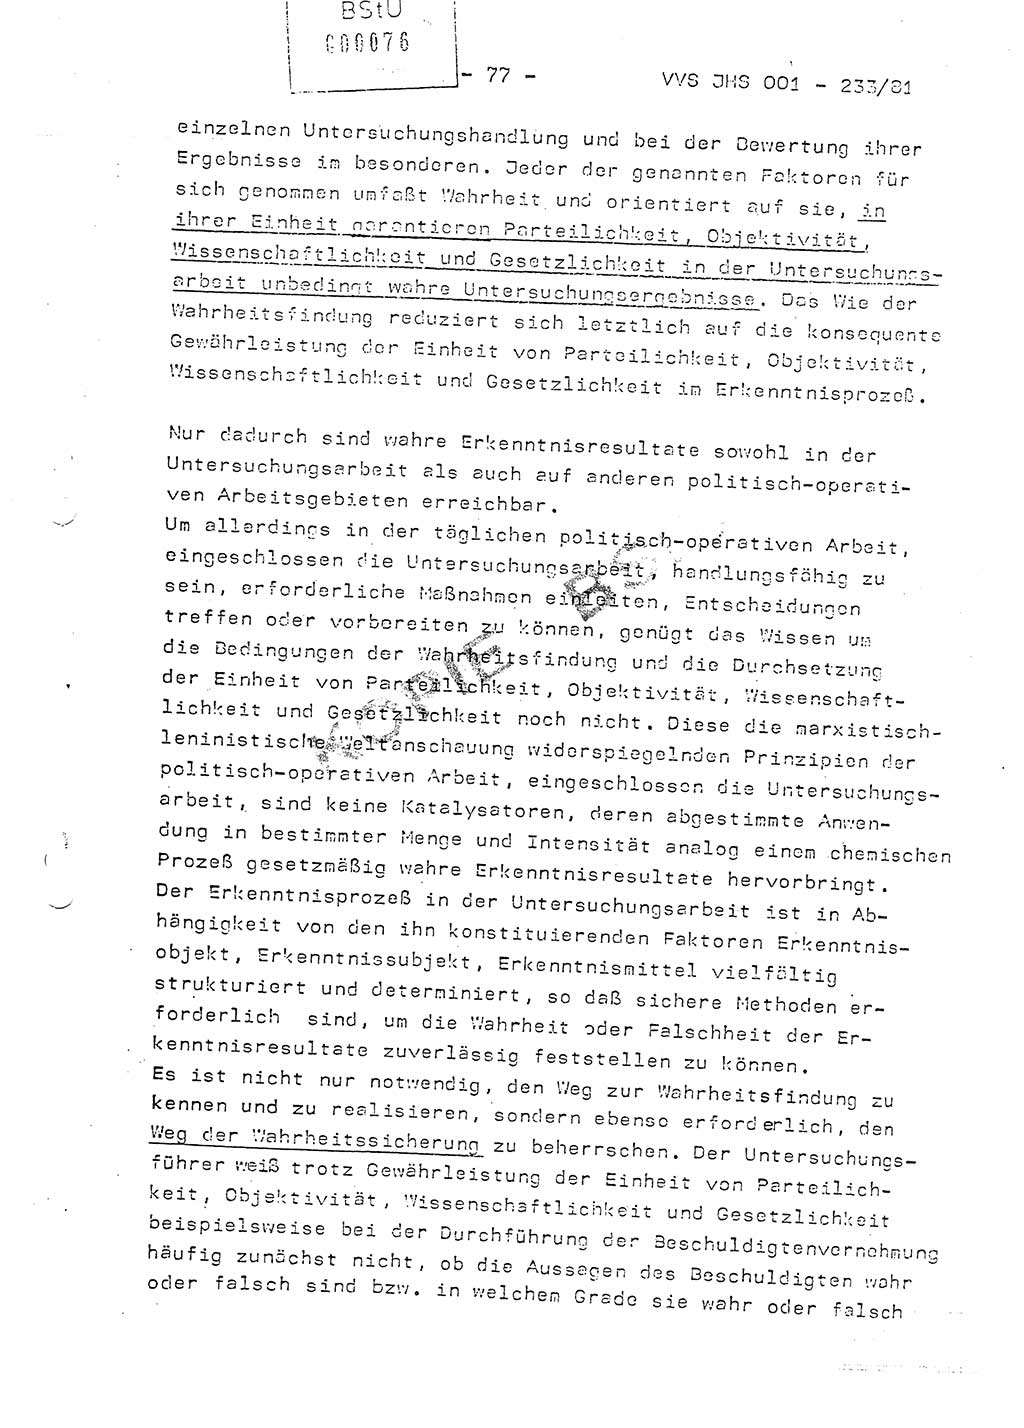 Dissertation Oberstleutnant Horst Zank (JHS), Oberstleutnant Dr. Karl-Heinz Knoblauch (JHS), Oberstleutnant Gustav-Adolf Kowalewski (HA Ⅸ), Oberstleutnant Wolfgang Plötner (HA Ⅸ), Ministerium für Staatssicherheit (MfS) [Deutsche Demokratische Republik (DDR)], Juristische Hochschule (JHS), Vertrauliche Verschlußsache (VVS) o001-233/81, Potsdam 1981, Blatt 77 (Diss. MfS DDR JHS VVS o001-233/81 1981, Bl. 77)